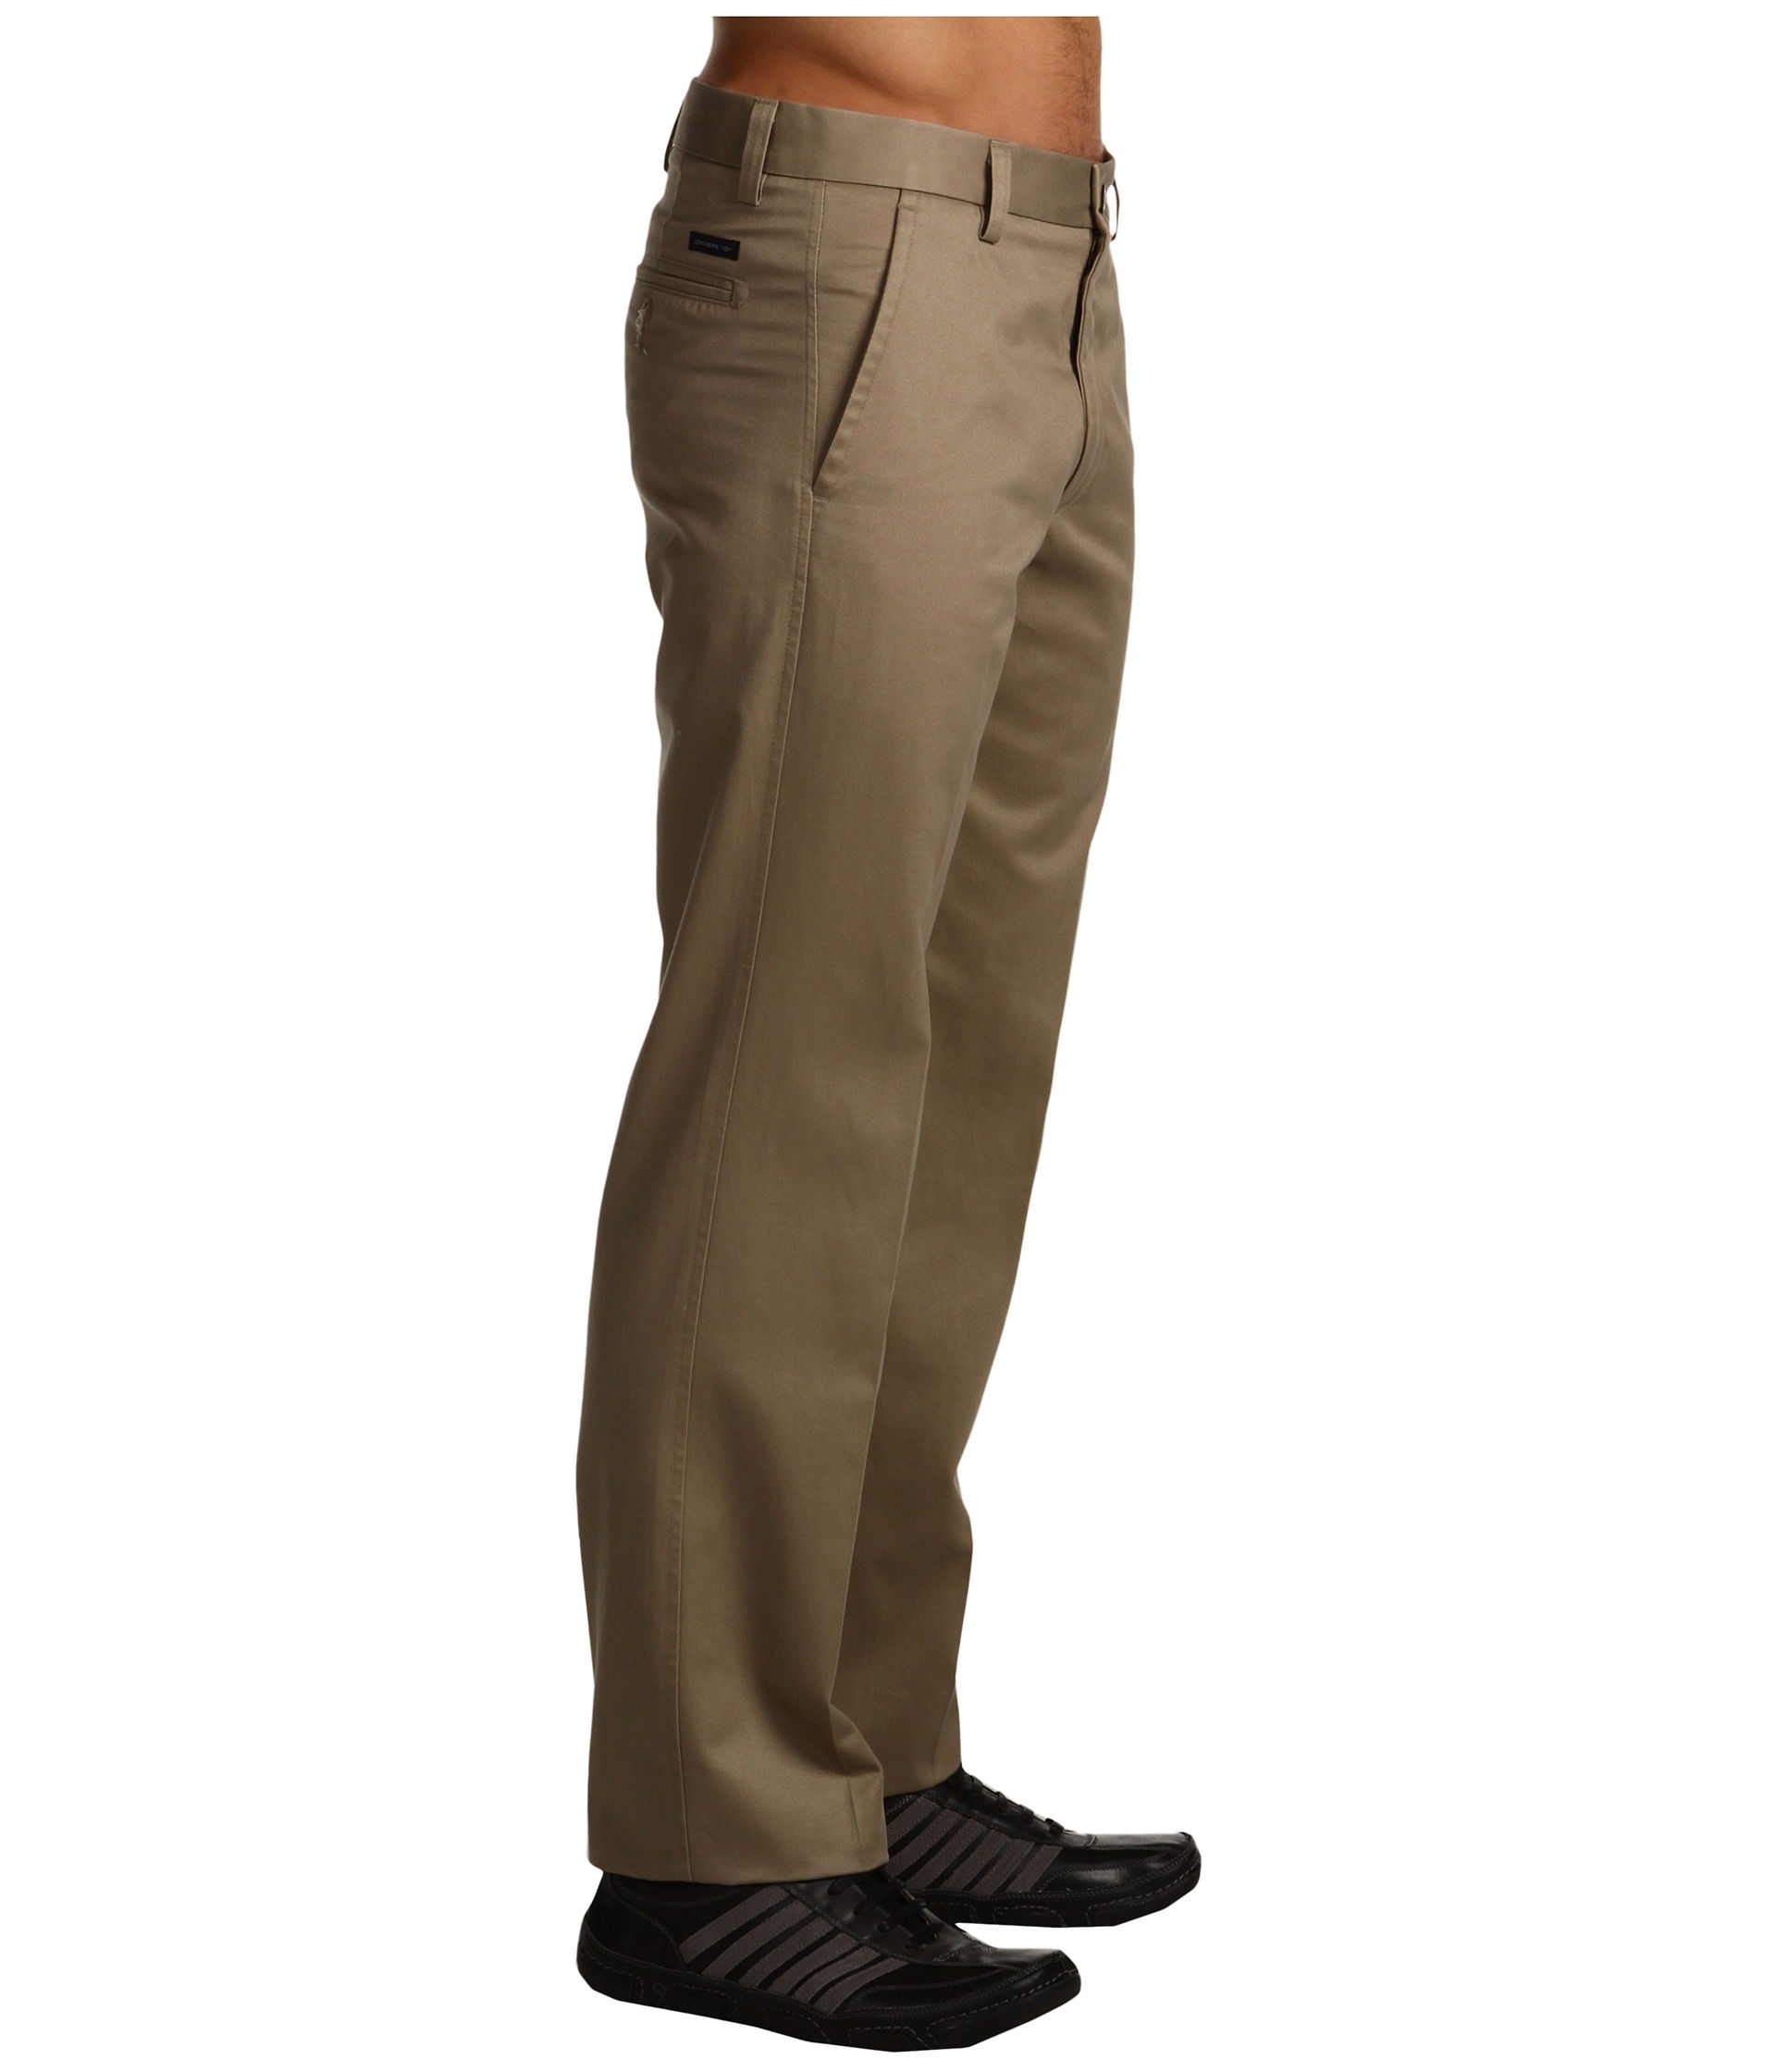 Dockers Men's Signature Khaki D1 Slim Fit Flat Front at Zappos.com